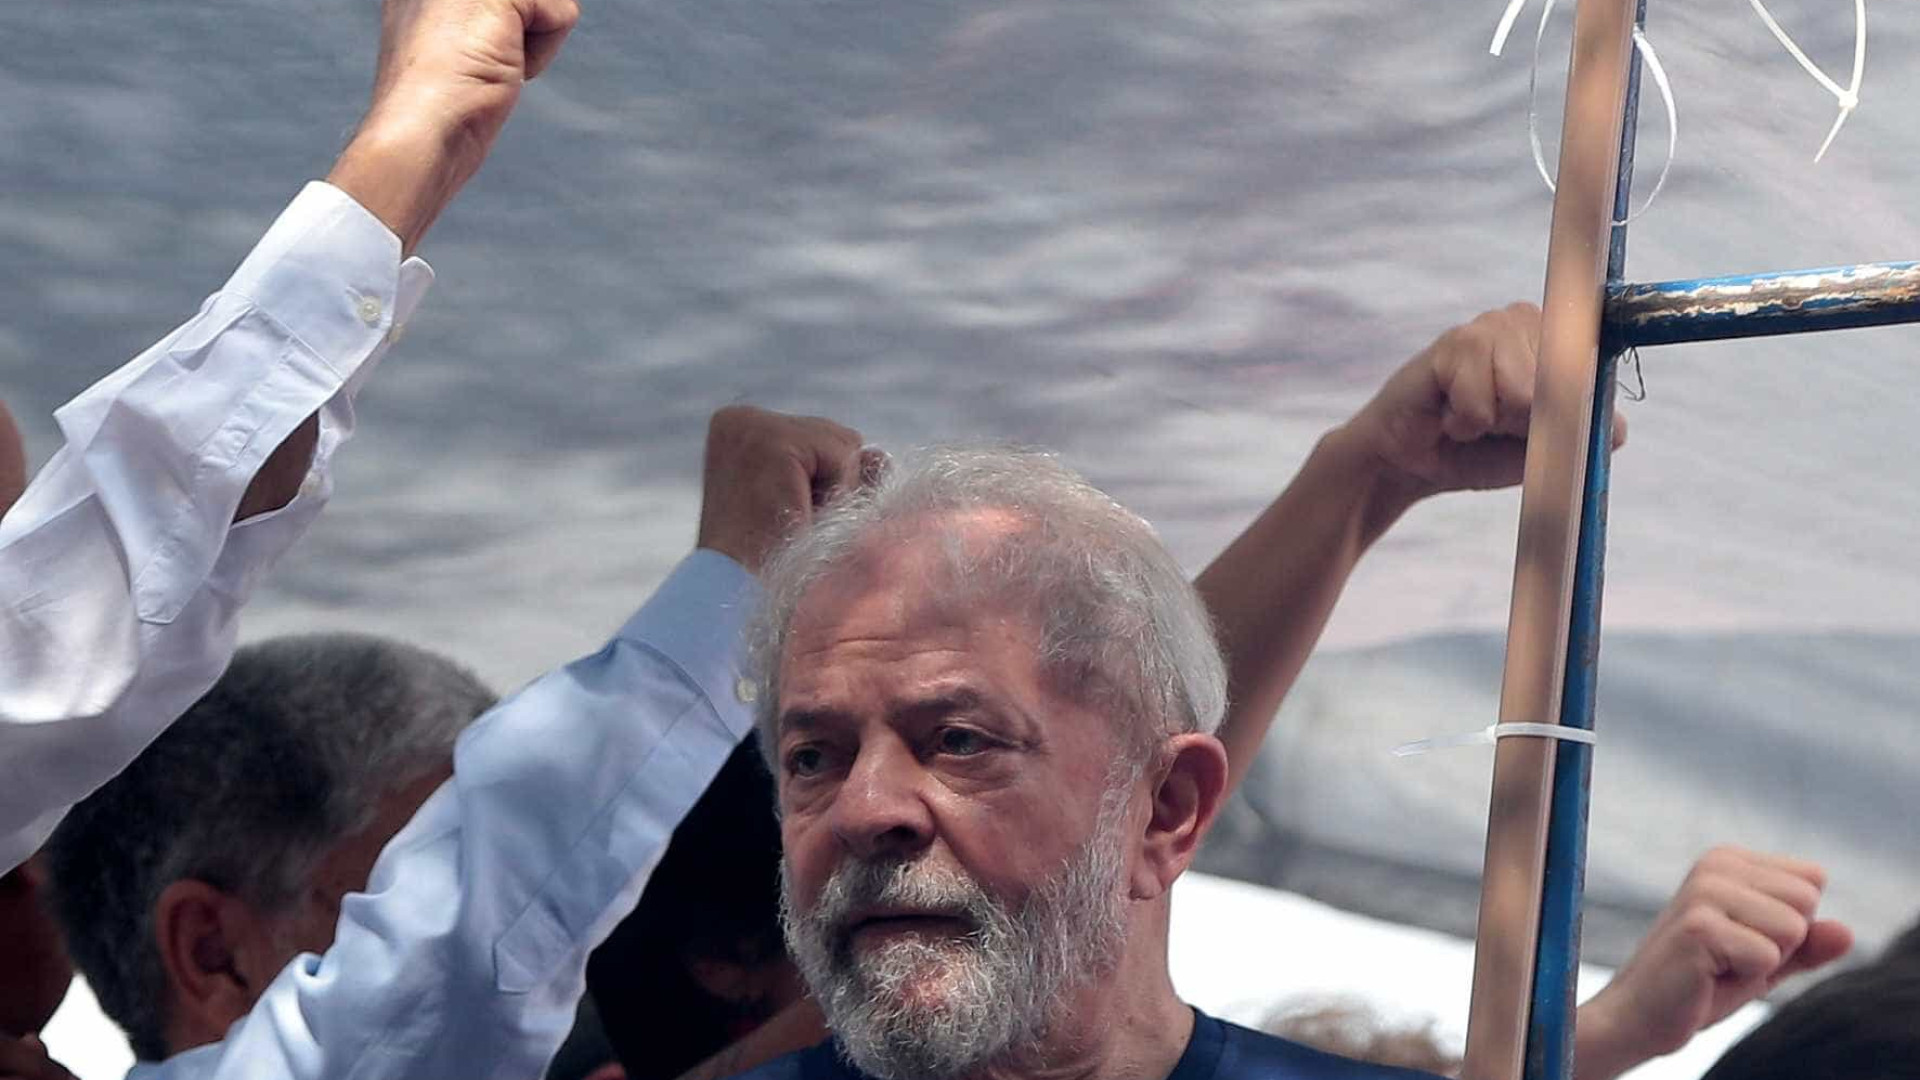 A trÃªs dias da eleiÃ§Ã£o, procuradoria pede nova condenaÃ§Ã£o de Lula